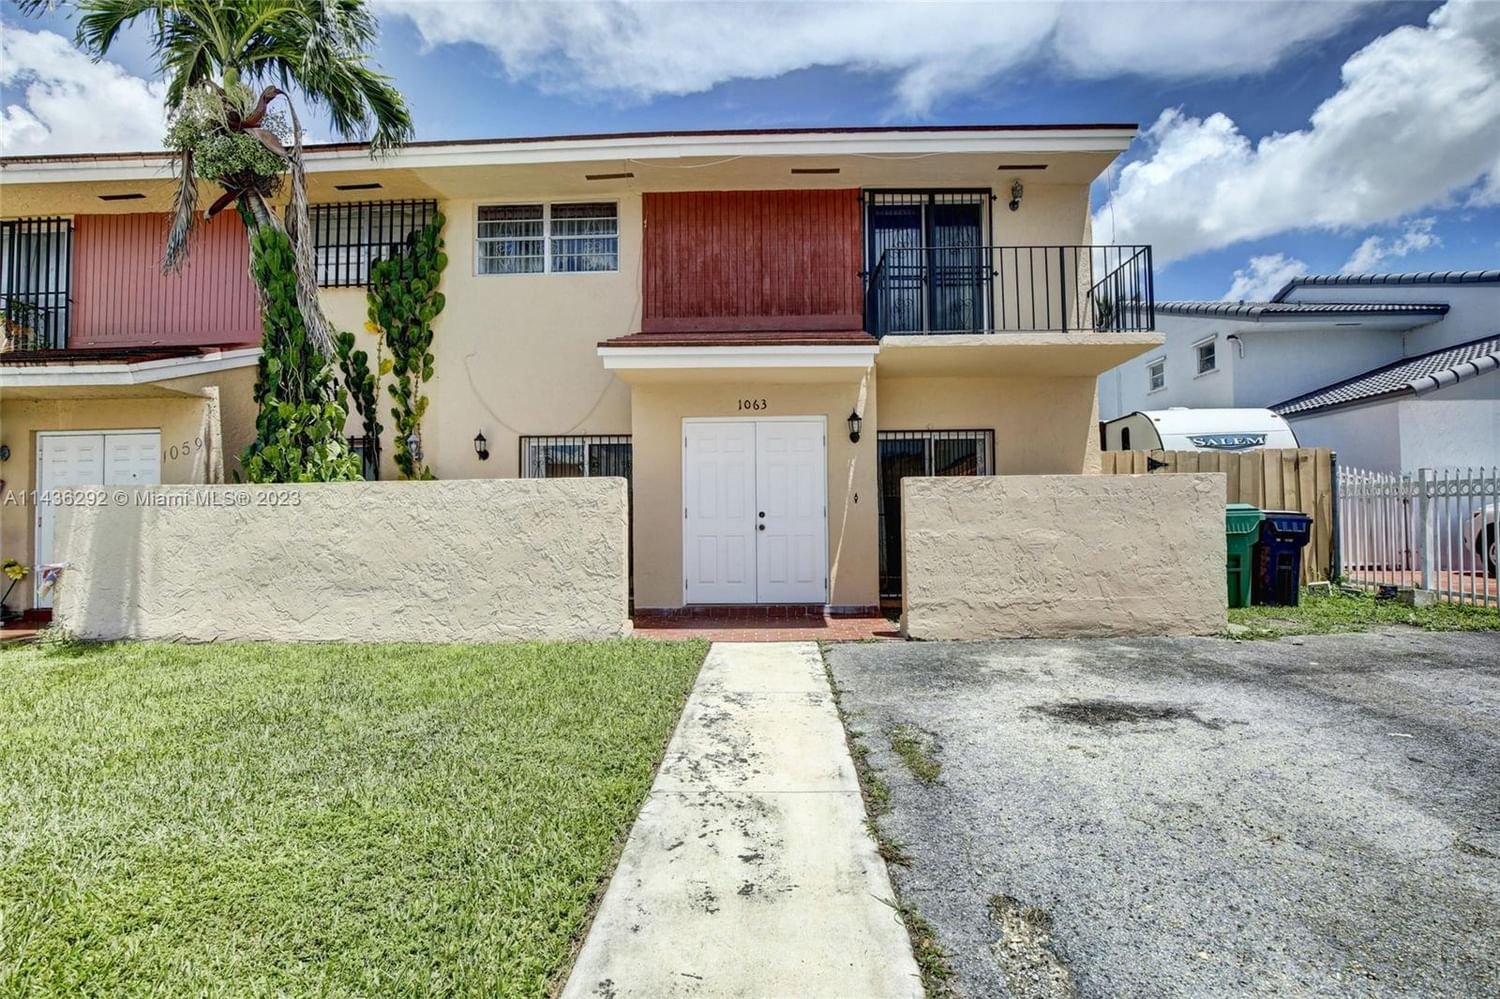 Real estate property located at 1063 124th Ct #1-2CII, Miami-Dade County, Miami, FL